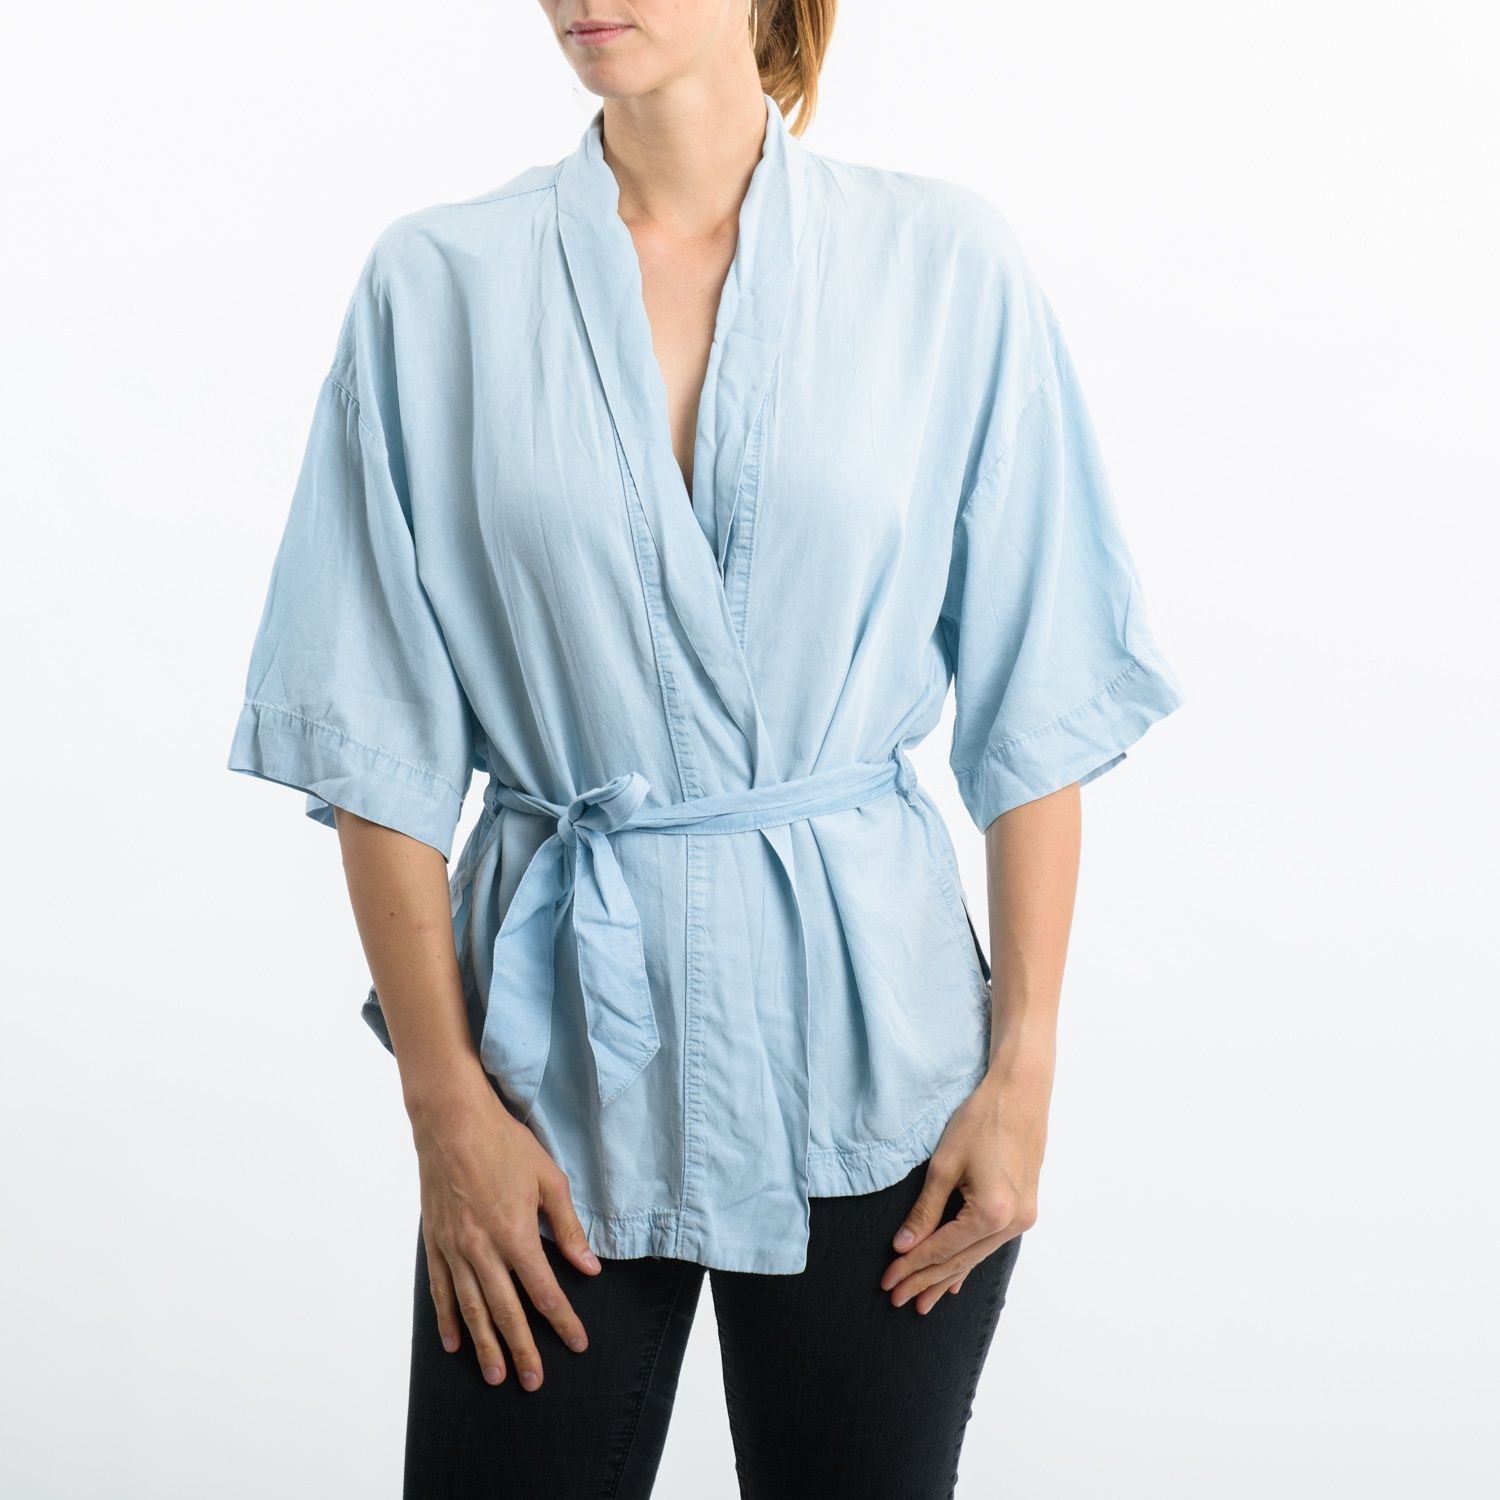 Bluzka Kimono Cubus rozmiar L/XL